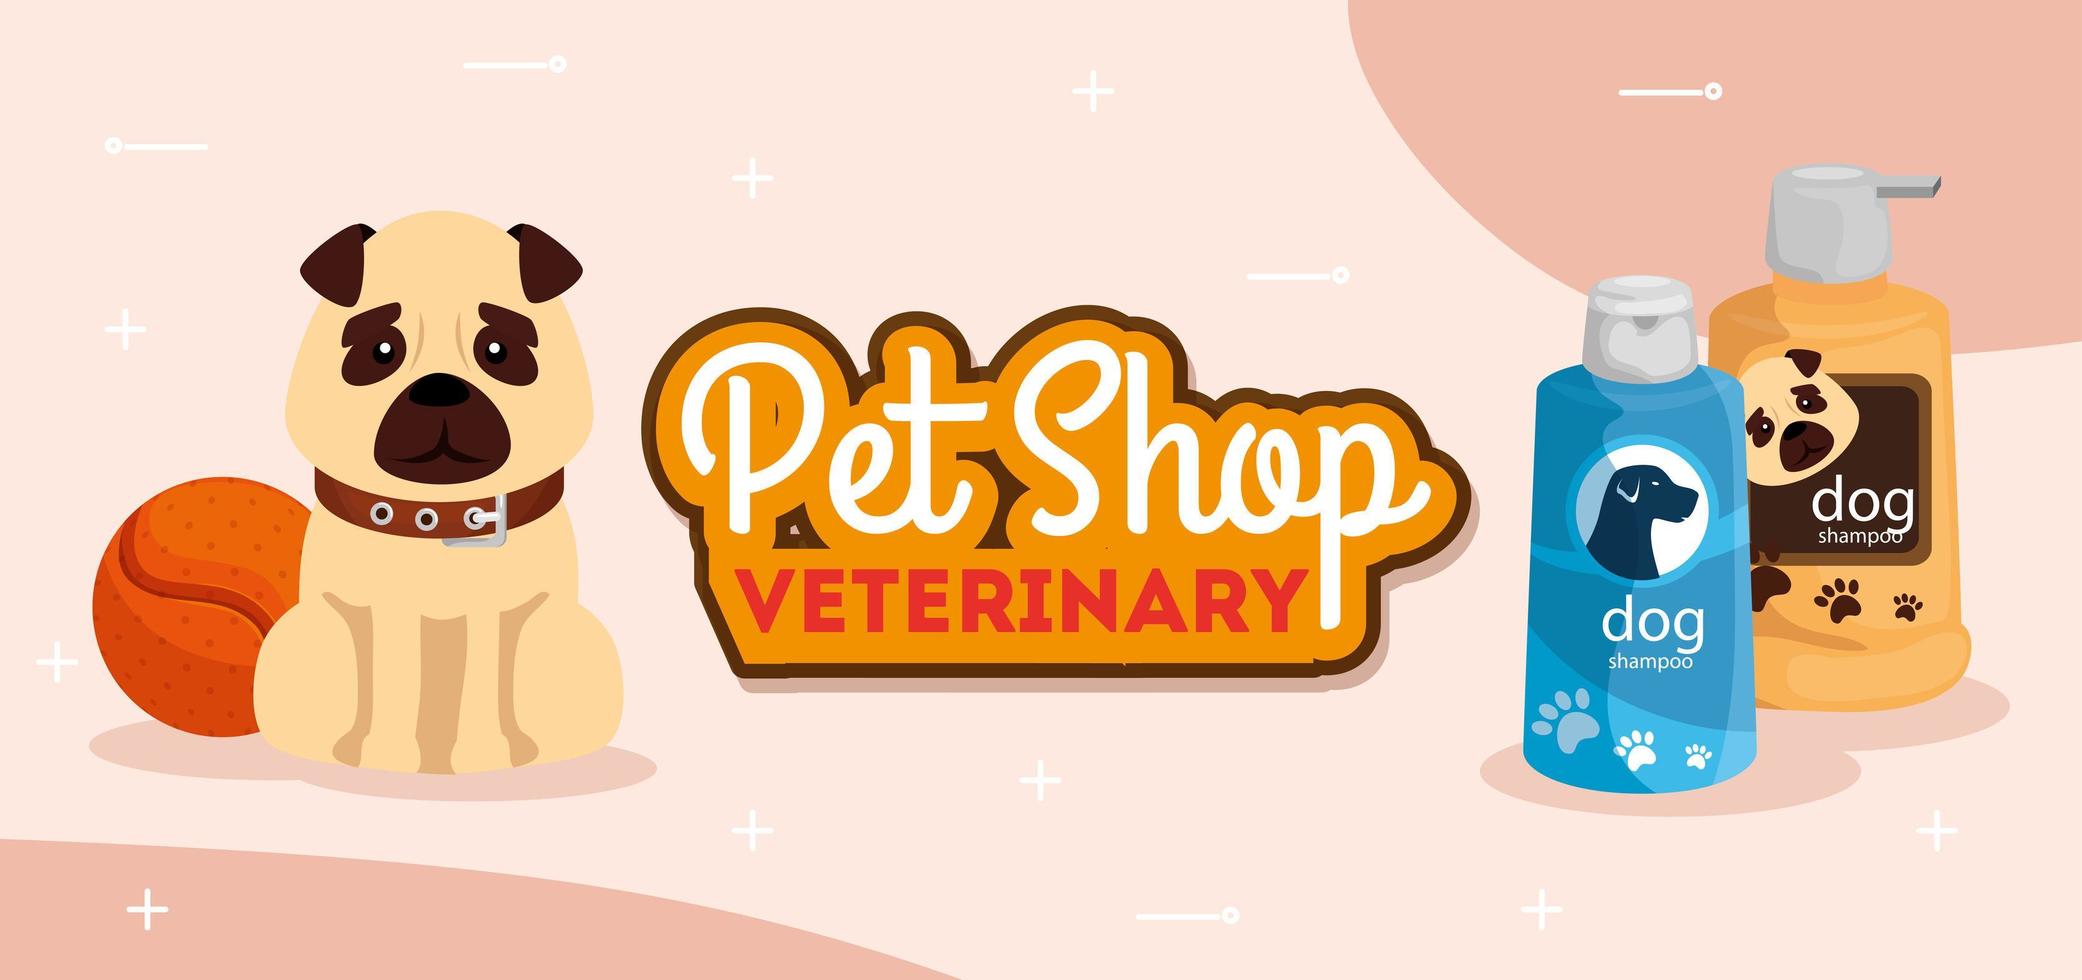 tienda de mascotas veterinaria con lindo perro y botellas de cuidado vector